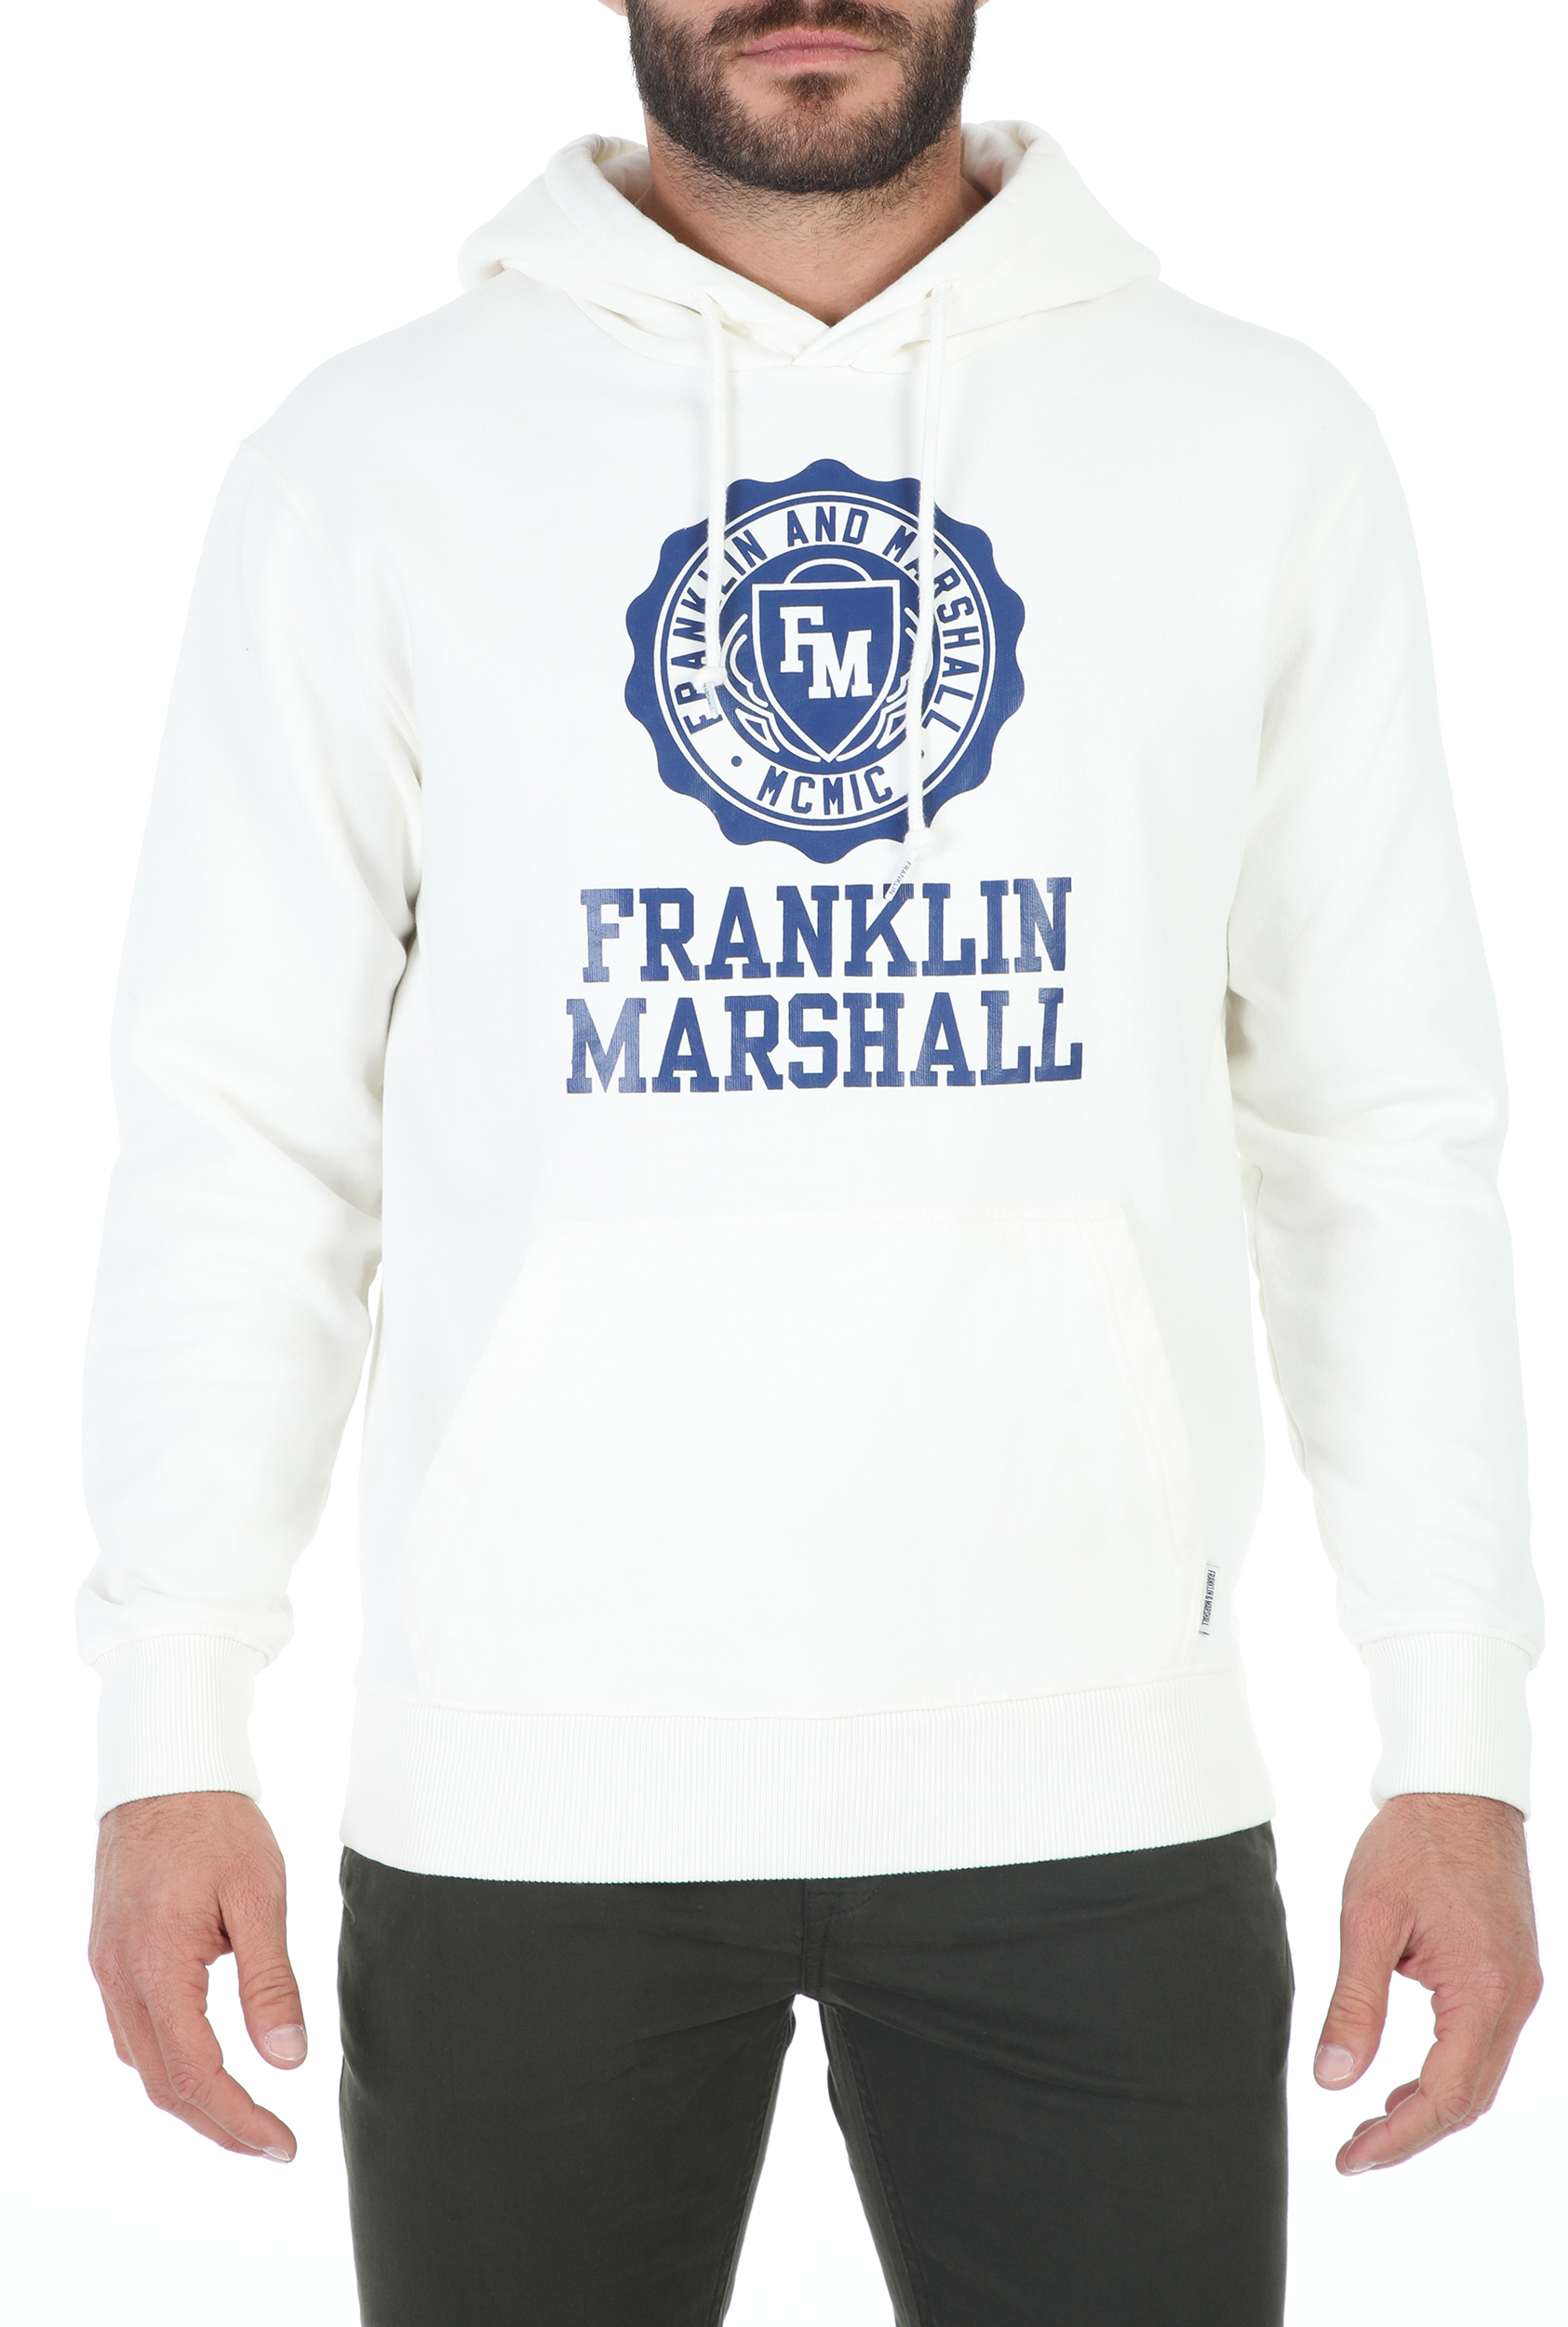 FRANKLIN & MARSHALL – Ανδρικη φουτερ μπλουζα FRANKLIN & MARSHALL BRUSHED COTTON FLEE λευκη